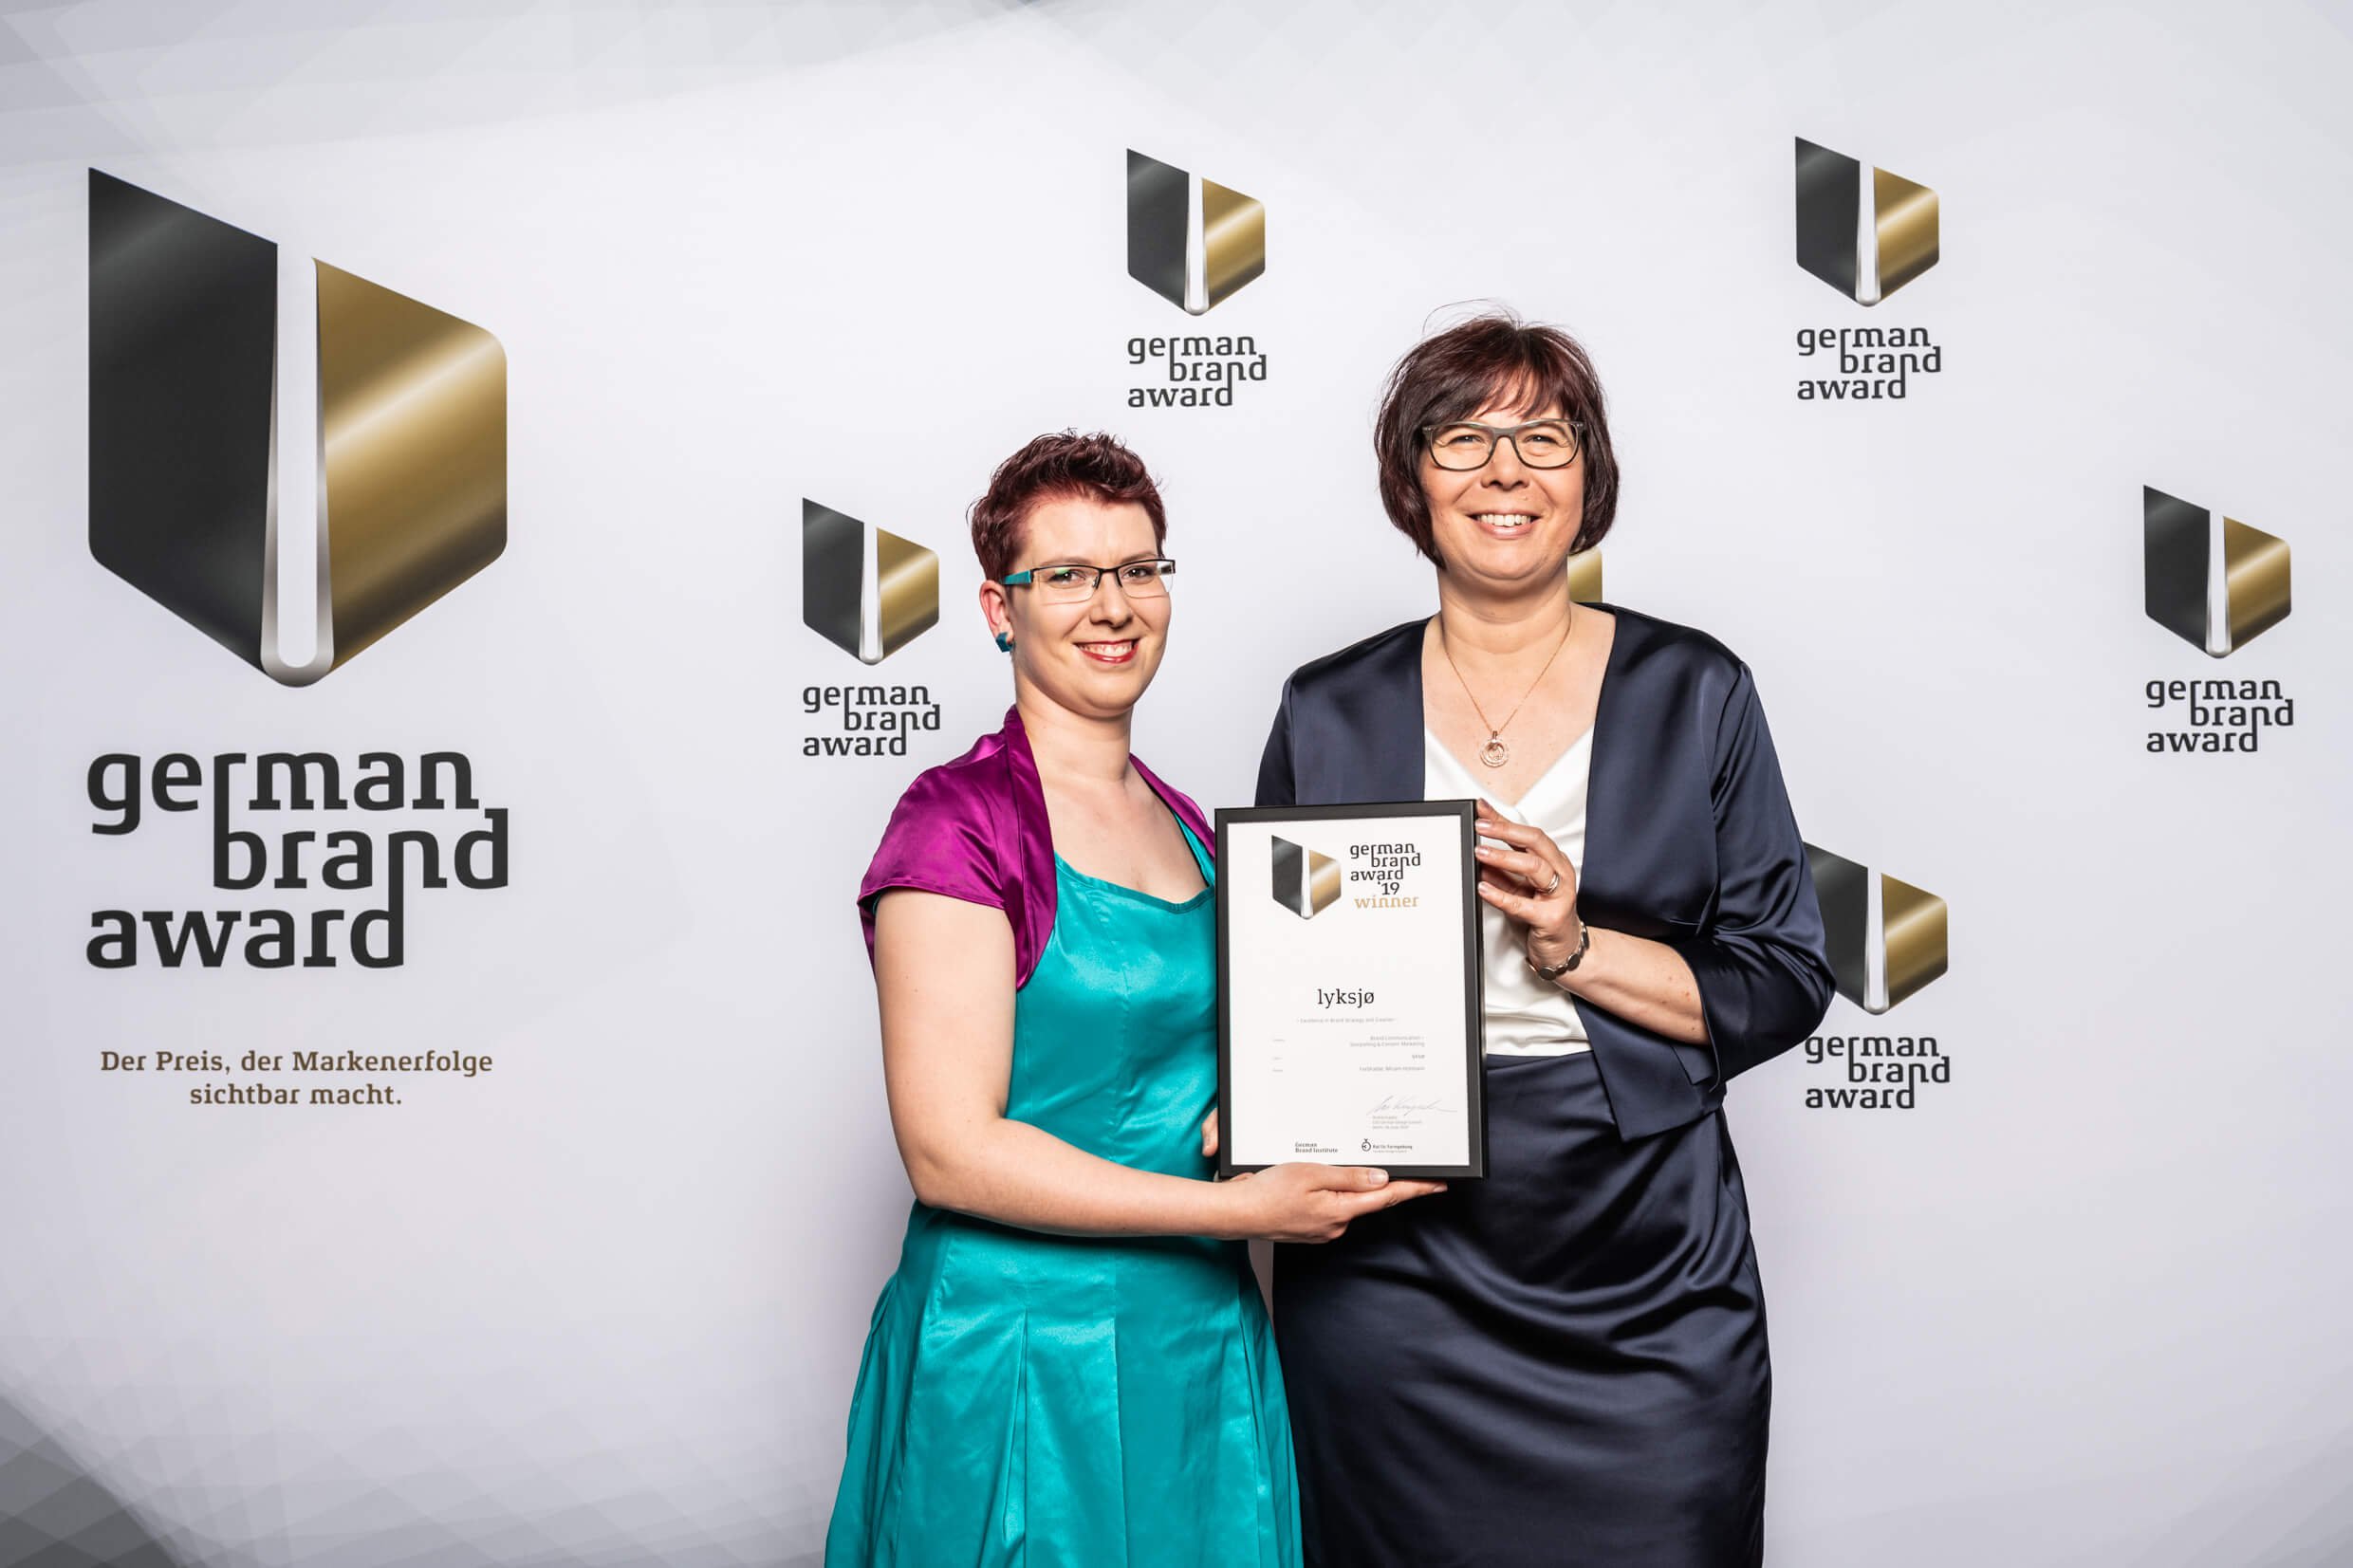 German Brand Award für Miriam Hohmann von FarbFaible für lyksjø